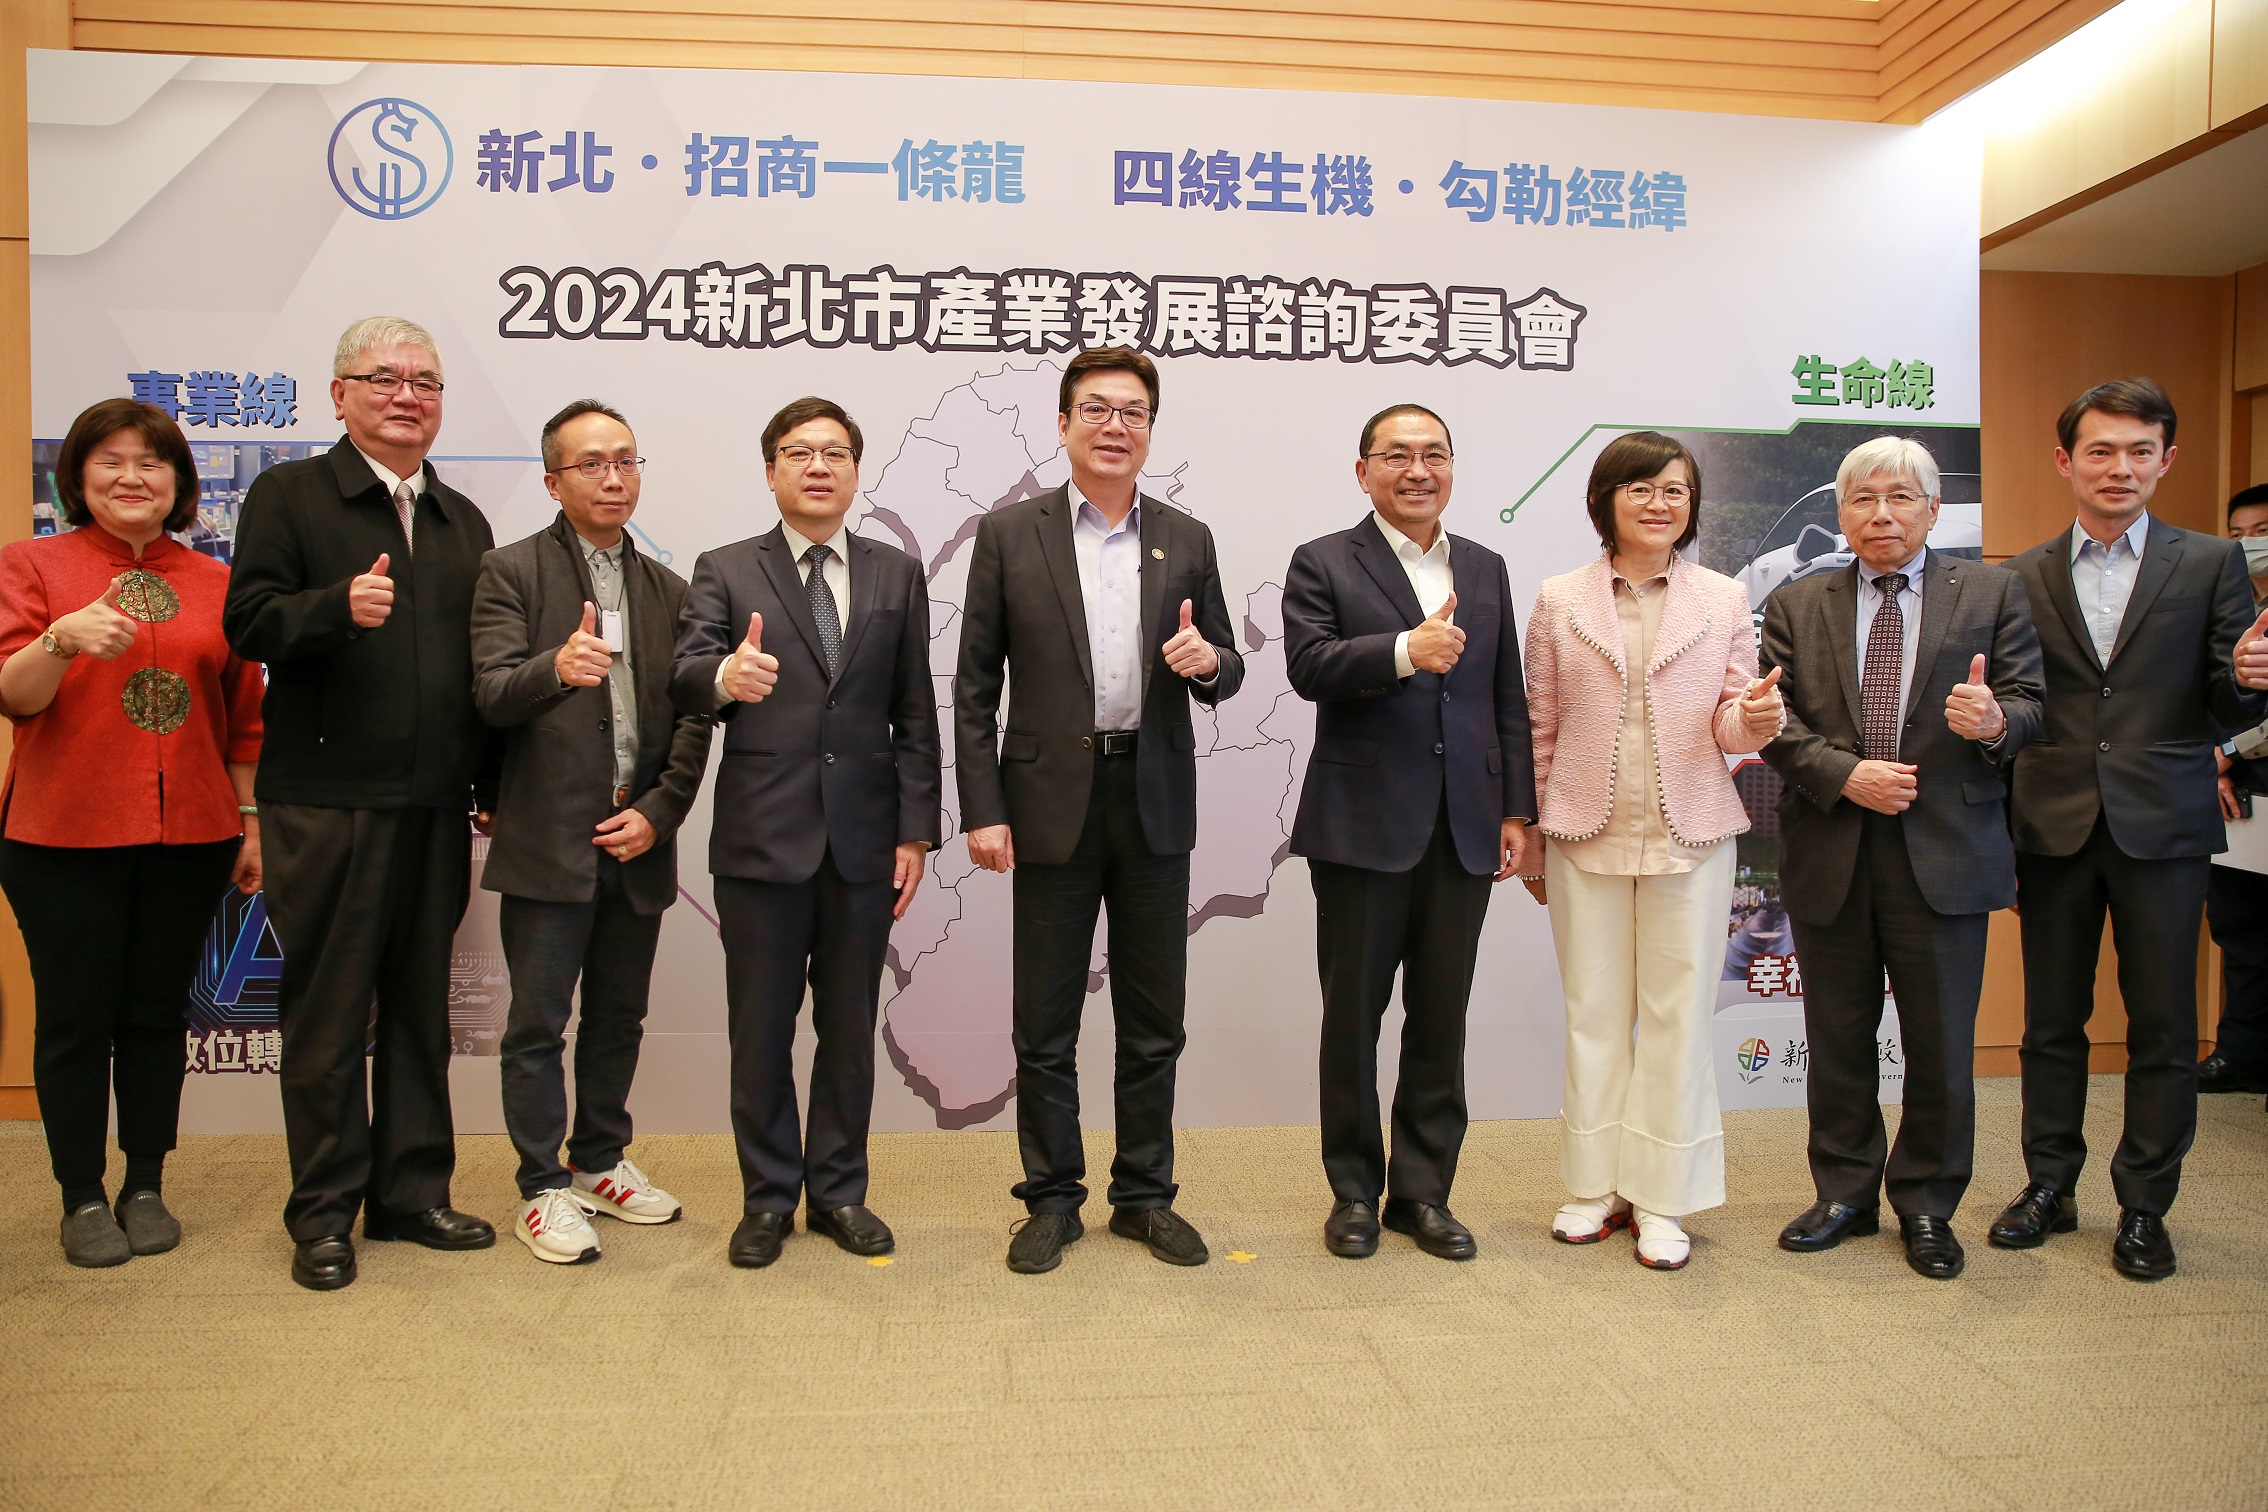 新北市長侯友宜(右4)及副市長劉和然(左5)與工商領袖代表合影